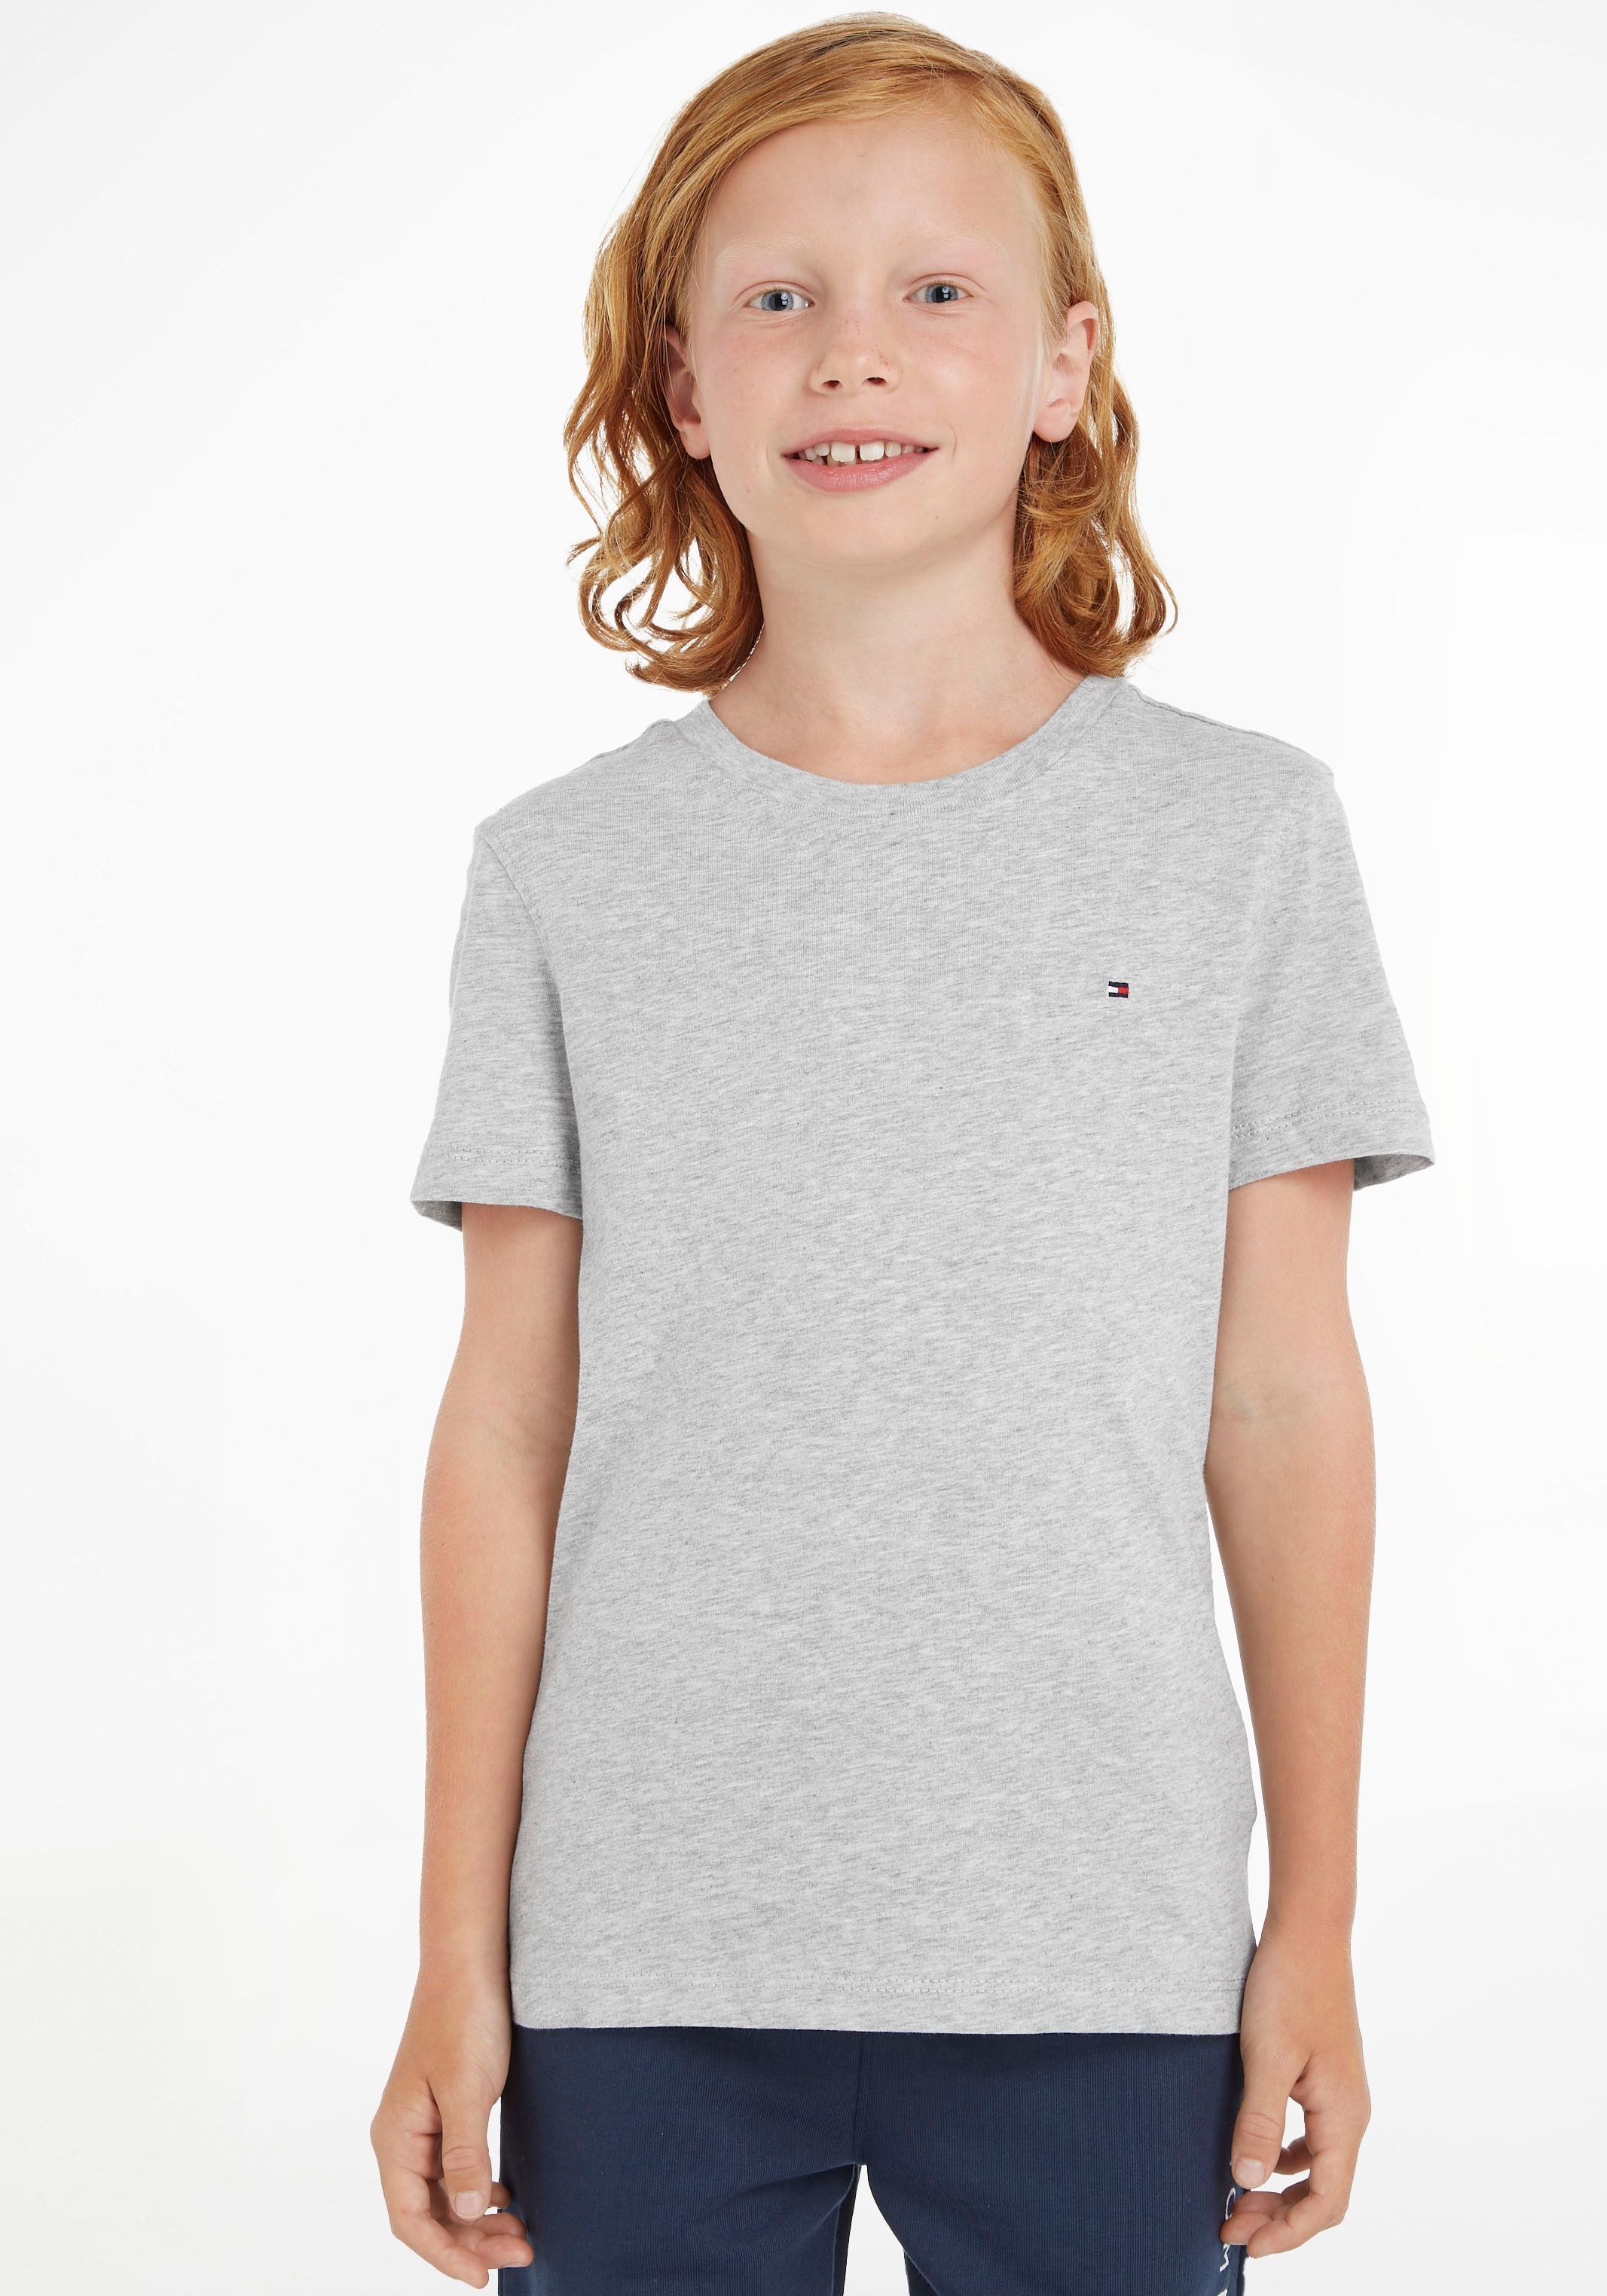 T-Shirt »BOYS BASIC CN KNIT«, Kinder Kids Junior MiniMe